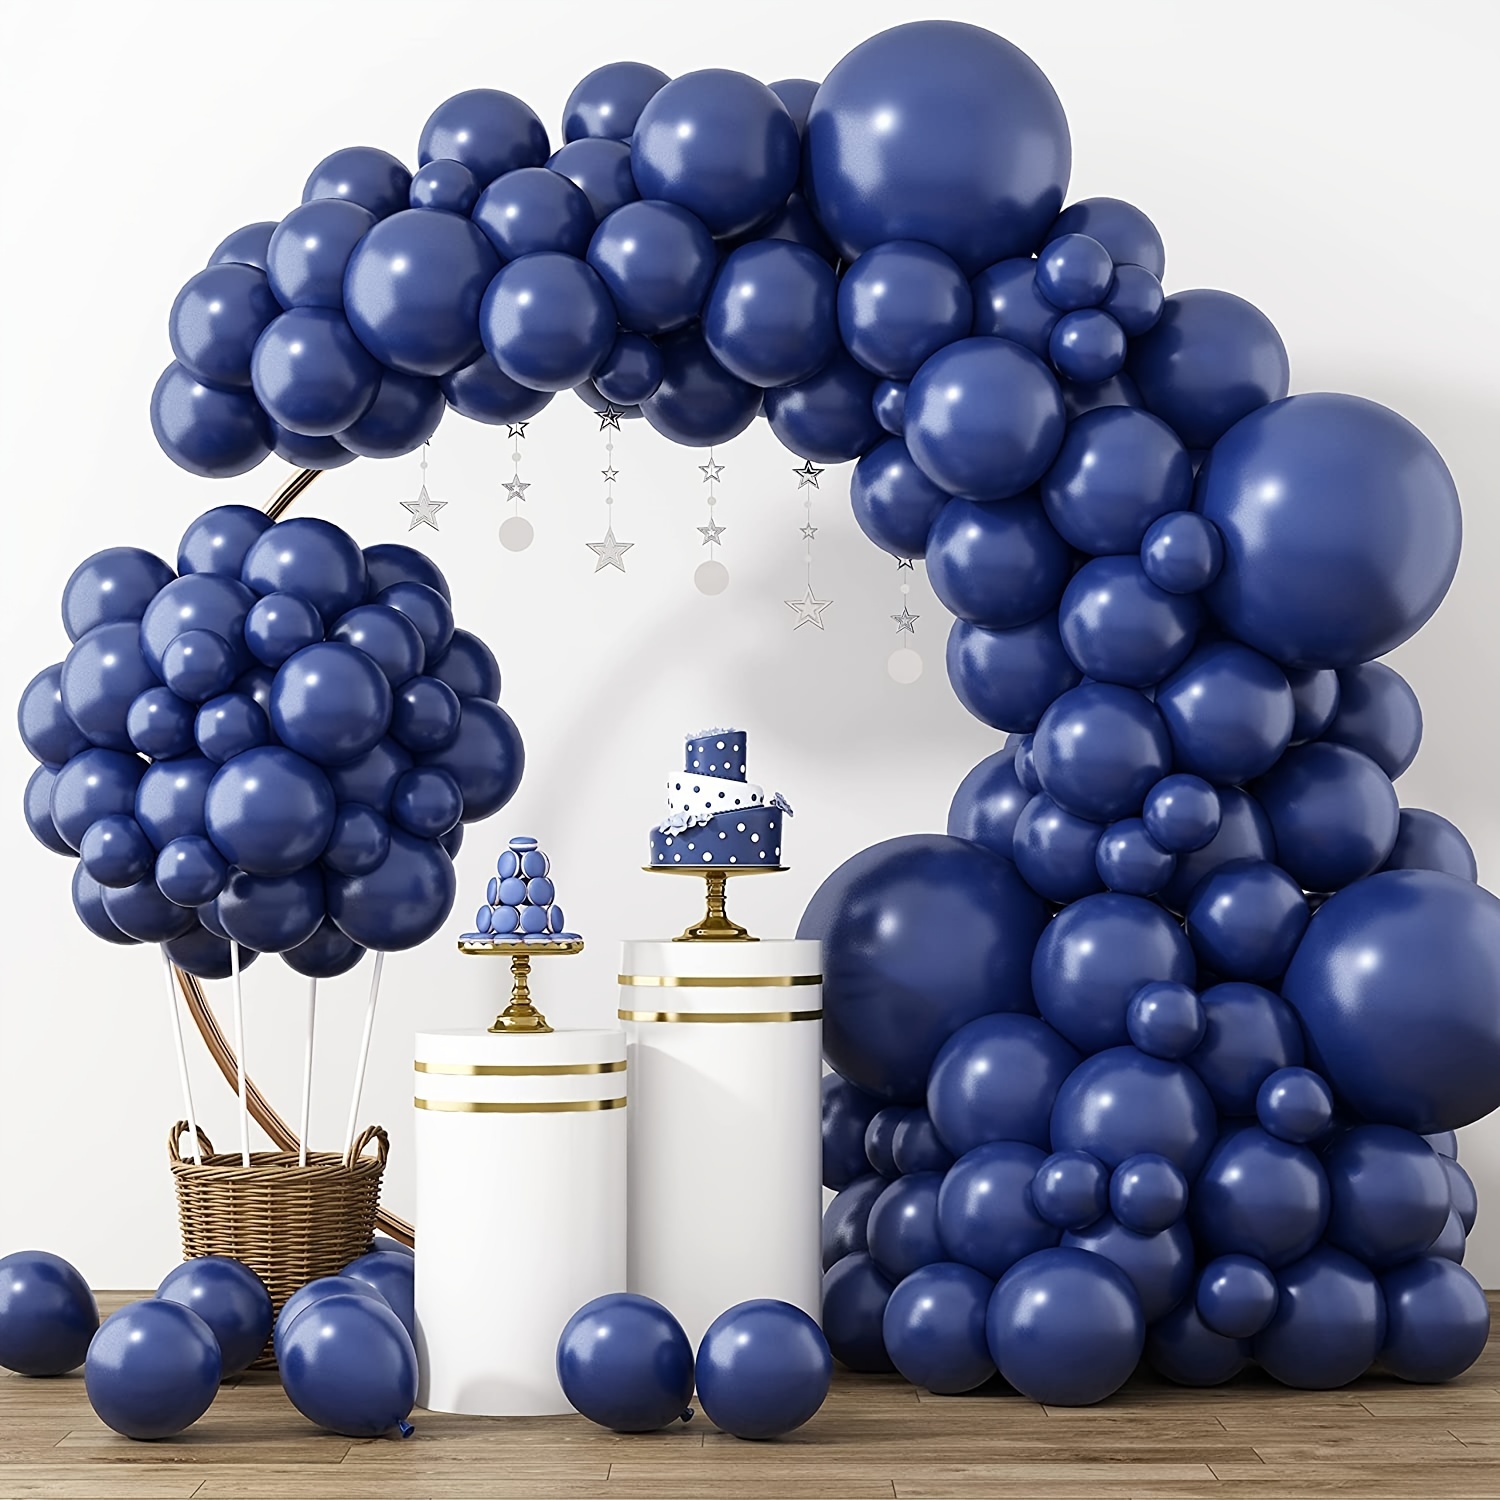 Globos de látex para cumpleaños de 60 años, 40 globos de color azul marino  y plateado de feliz cumpleaños de 60 años, globos de decoración de fiesta